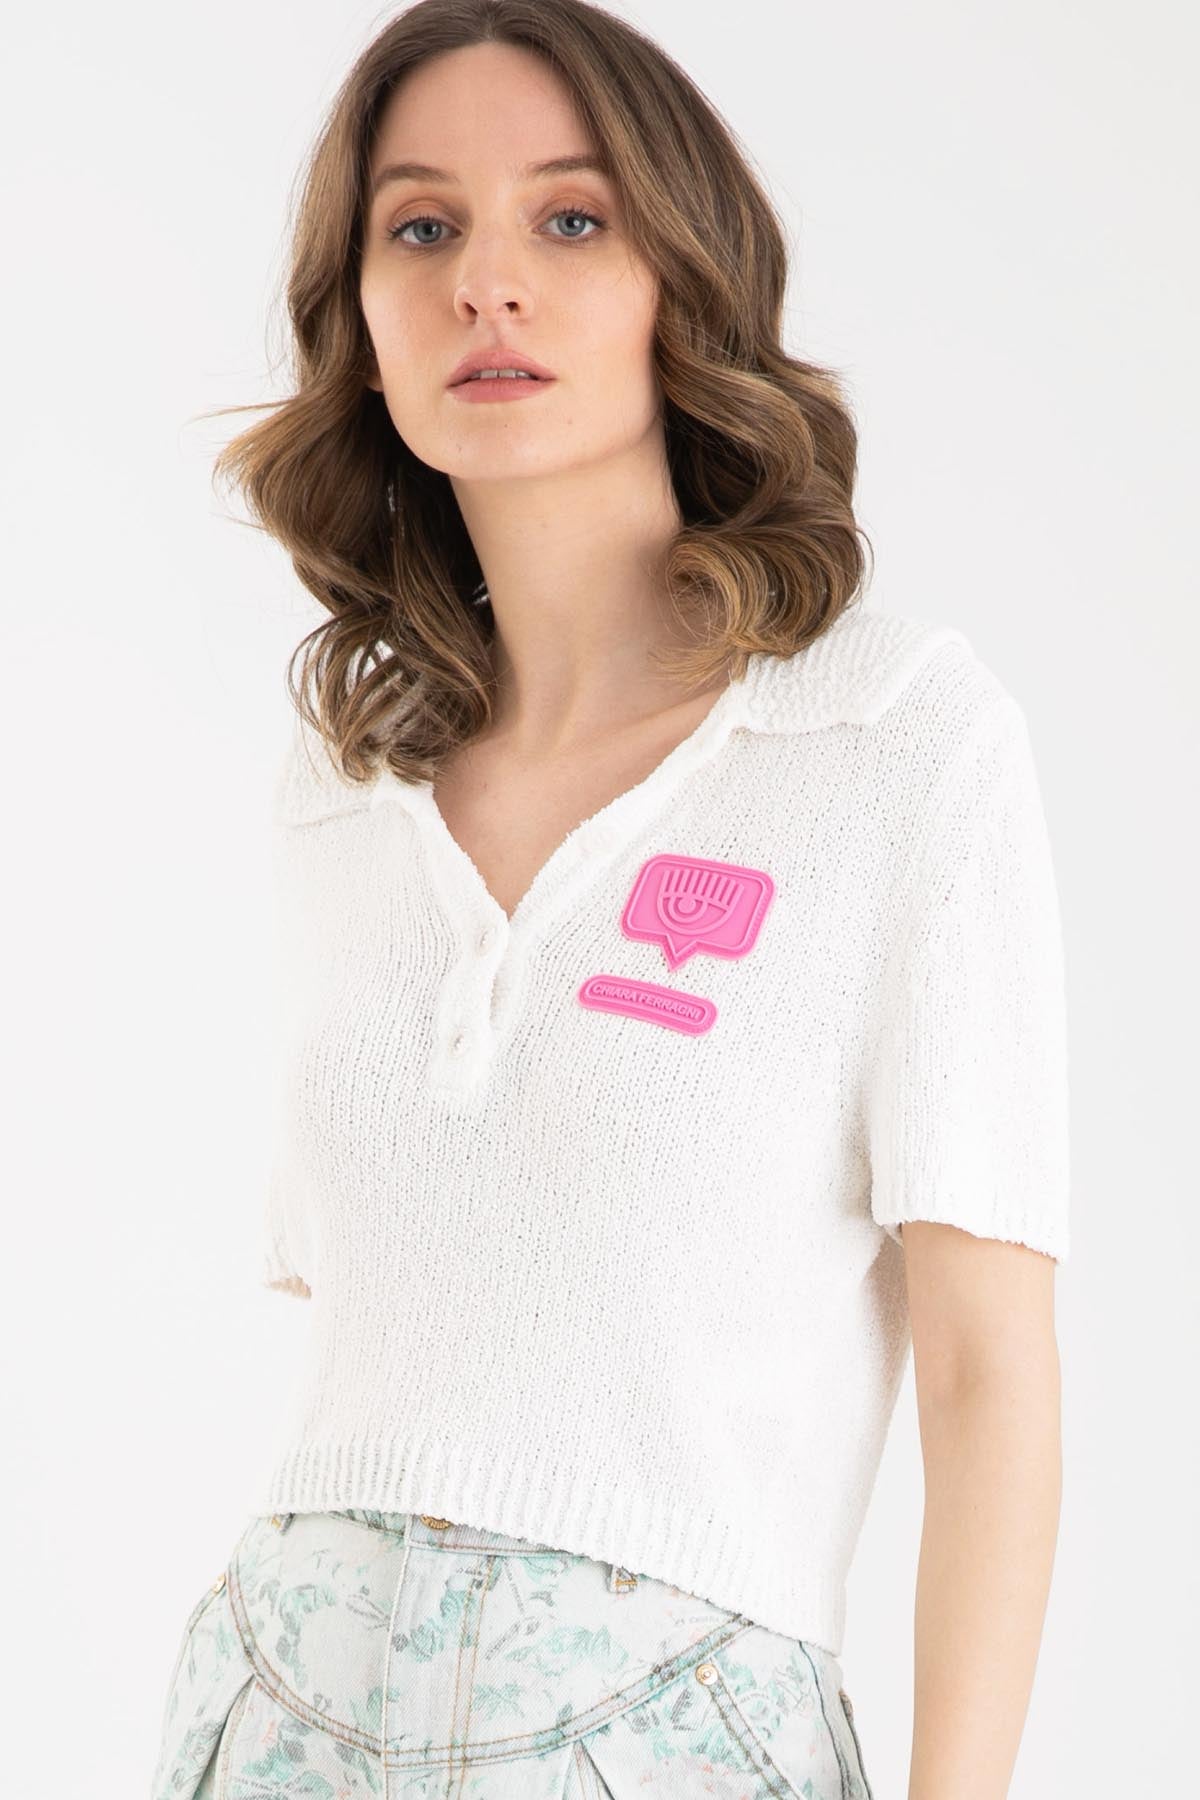 Chiara Ferragni Polo Yaka Triko T-shirt-Libas Trendy Fashion Store